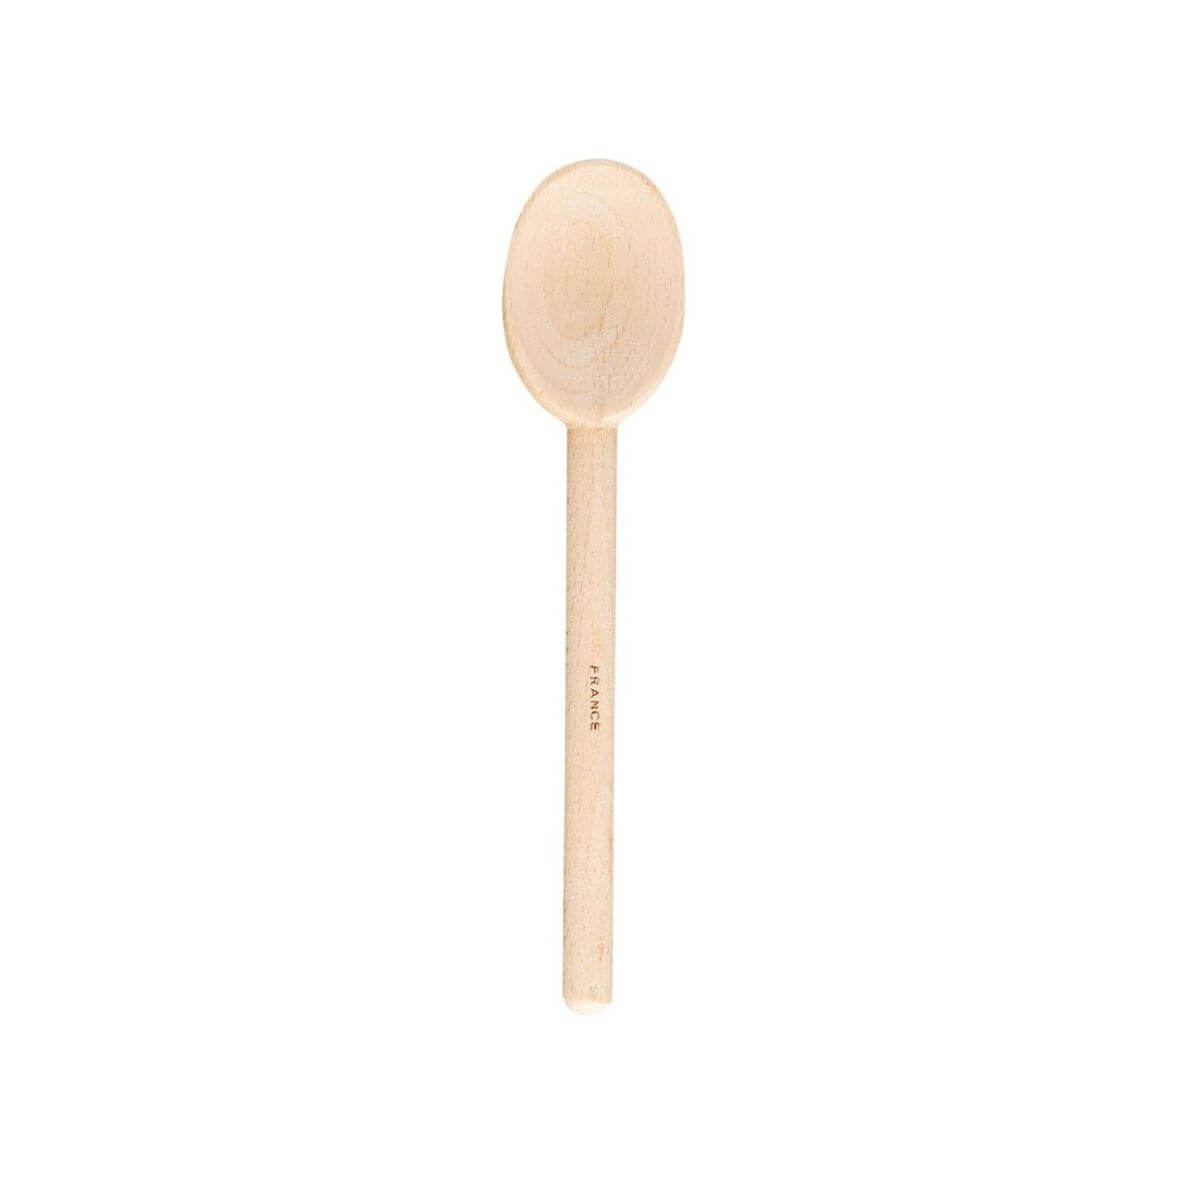 French Beechwood Spoon